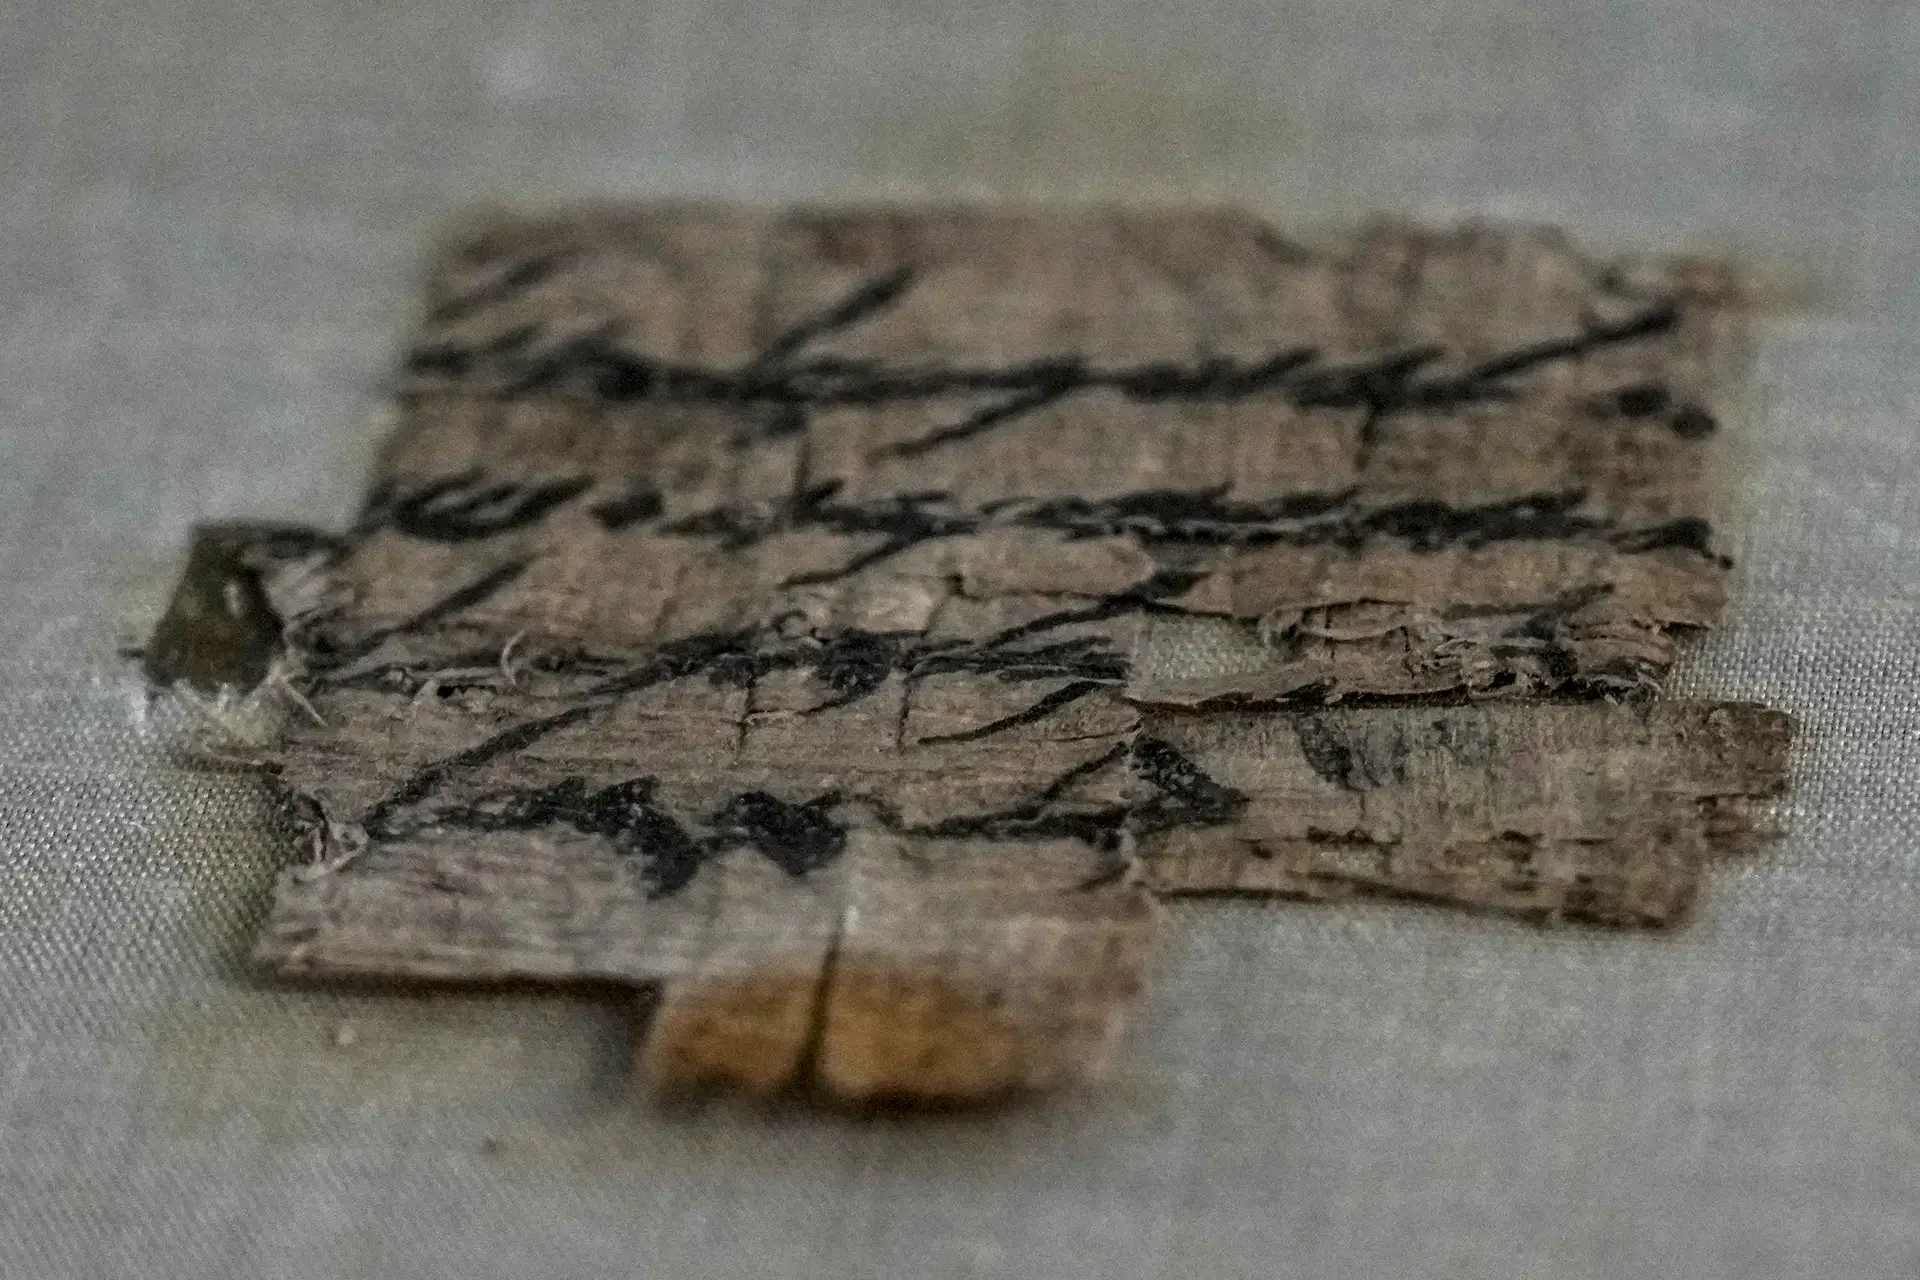 Israel adquire papiro raro com inscrição hebraica com cerca de 2.700 anos.